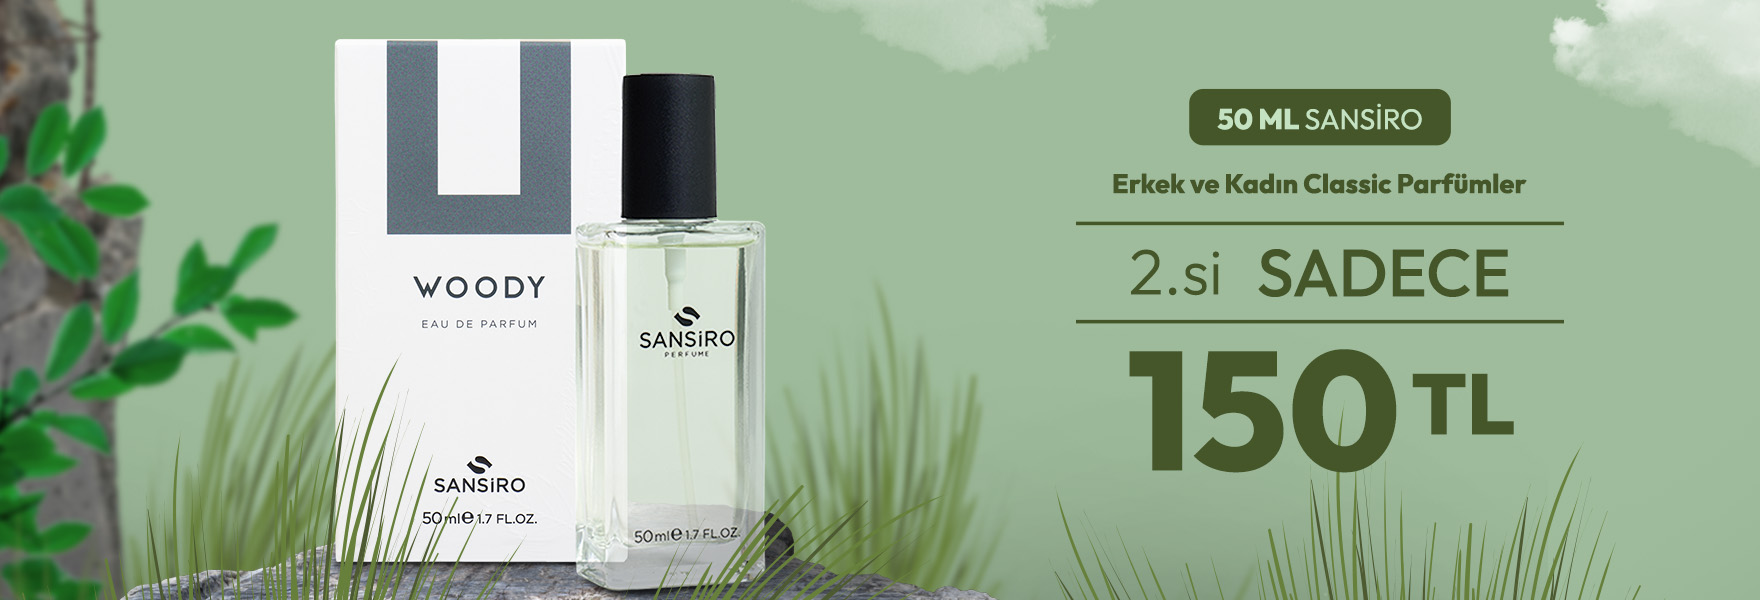 50ml Sansiro Classic Parfümlerde 2.Ürün Sadece 150 TL